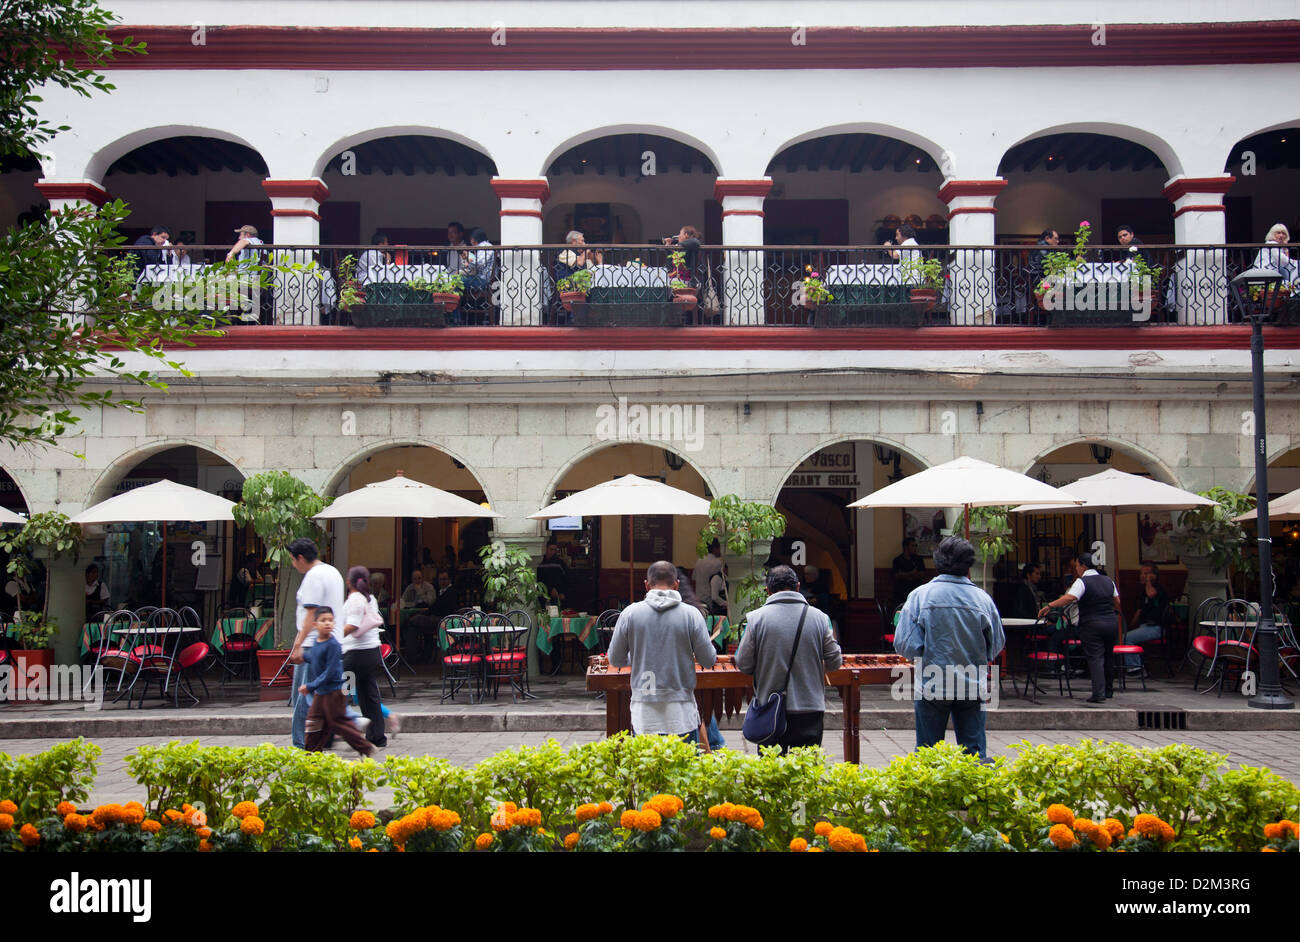 Restaurants on Oaxaca's Zocalo - Mexico Stock Photo